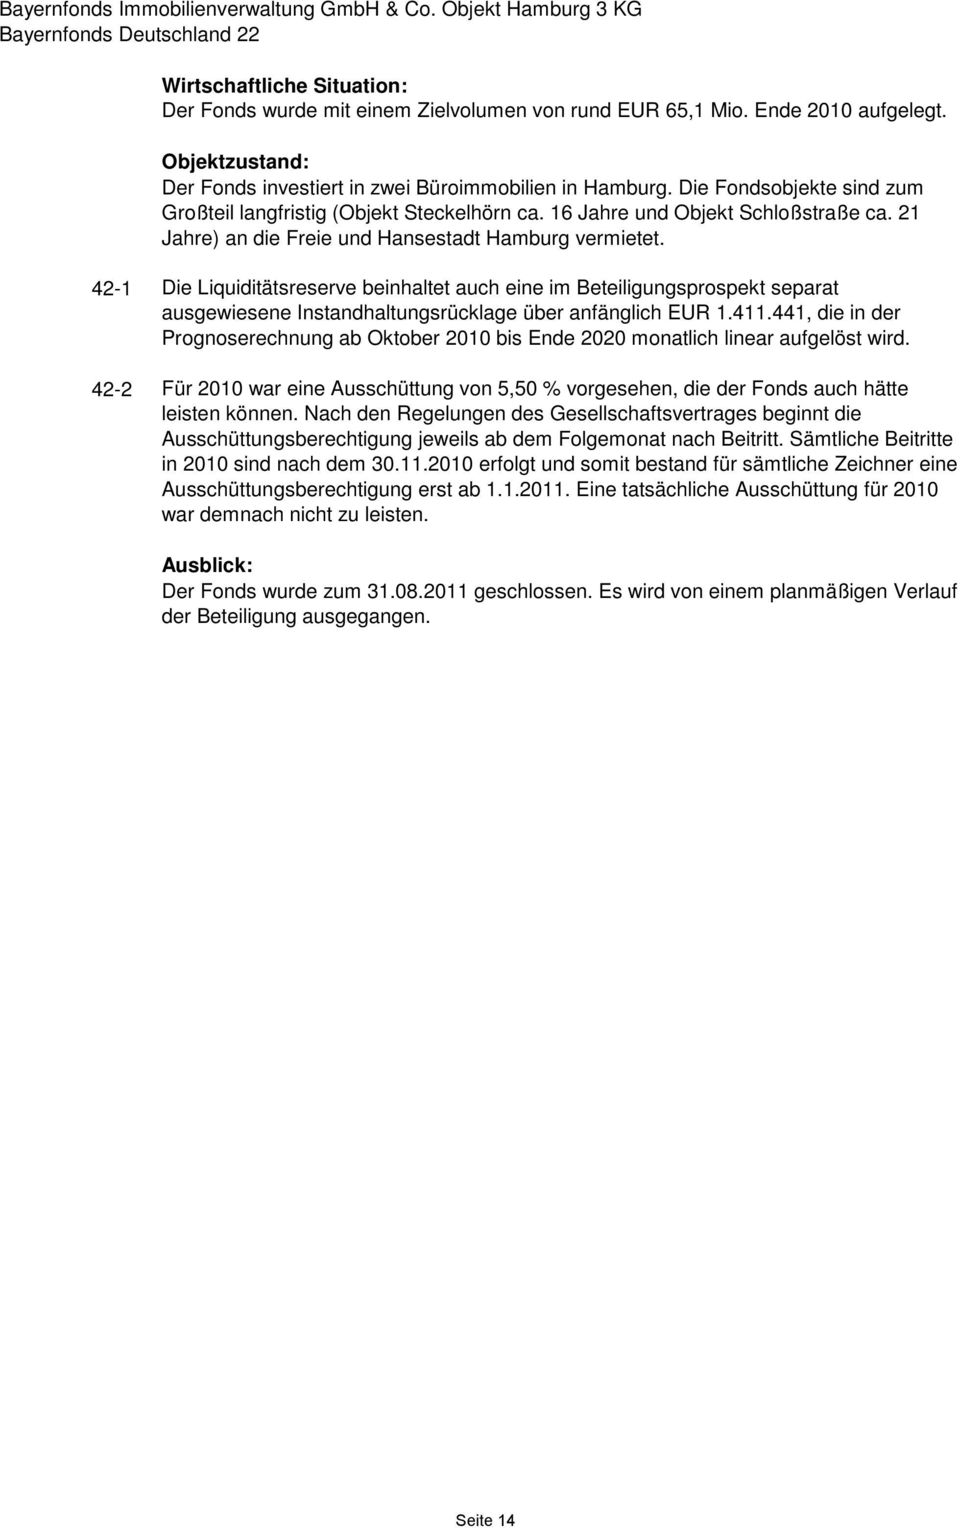 21 Jahre) an die Freie und Hansestadt Hamburg vermietet. 42-1 Die Liquiditätsreserve beinhaltet auch eine im Beteiligungsprospekt separat ausgewiesene Instandhaltungsrücklage über anfänglich EUR 1.